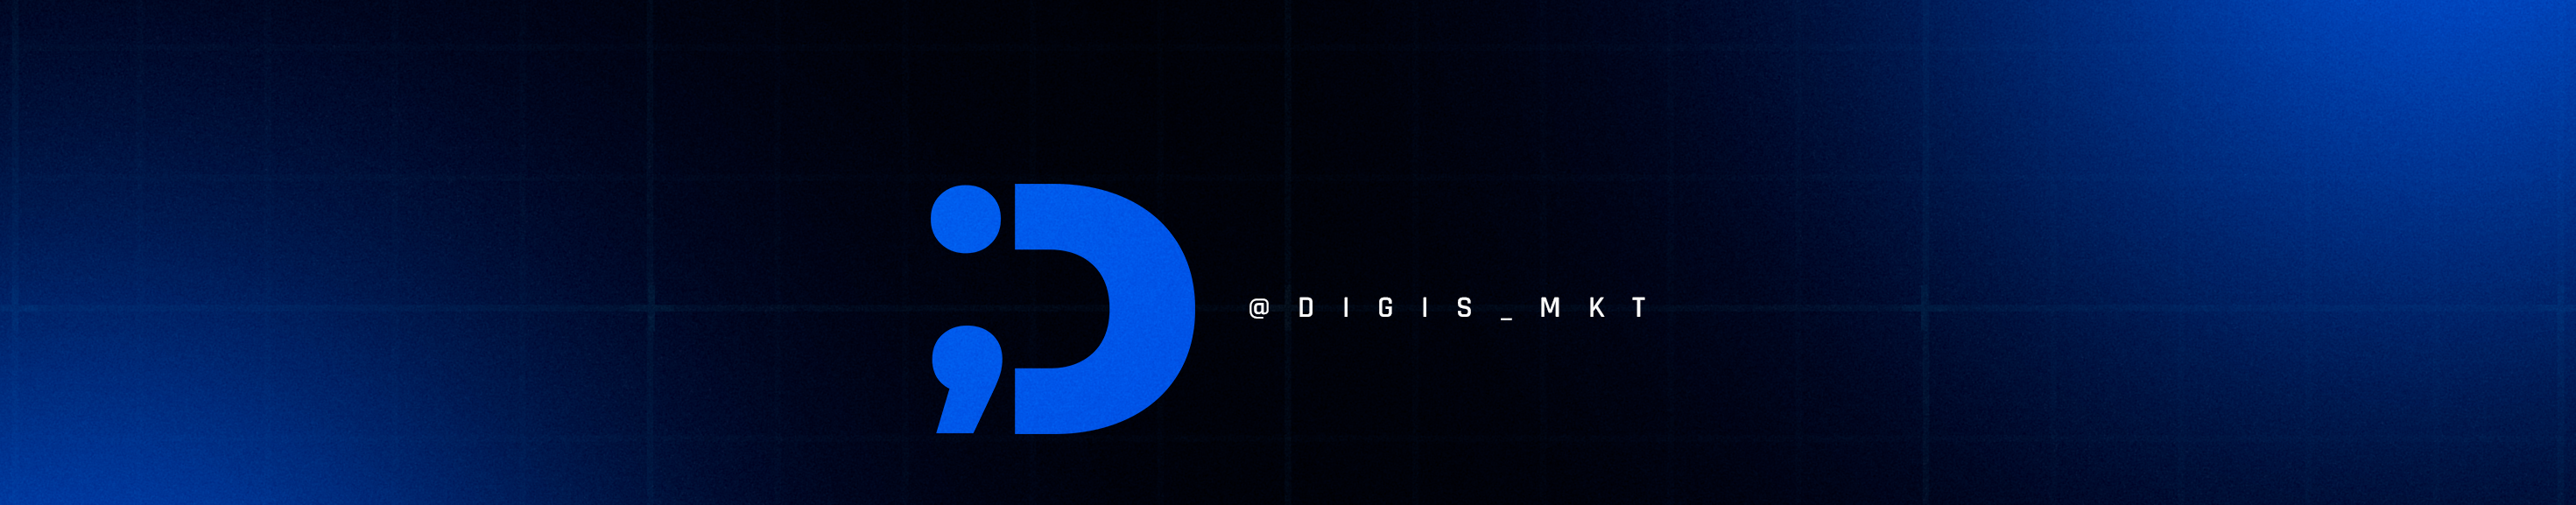 Digís mkt's profile banner